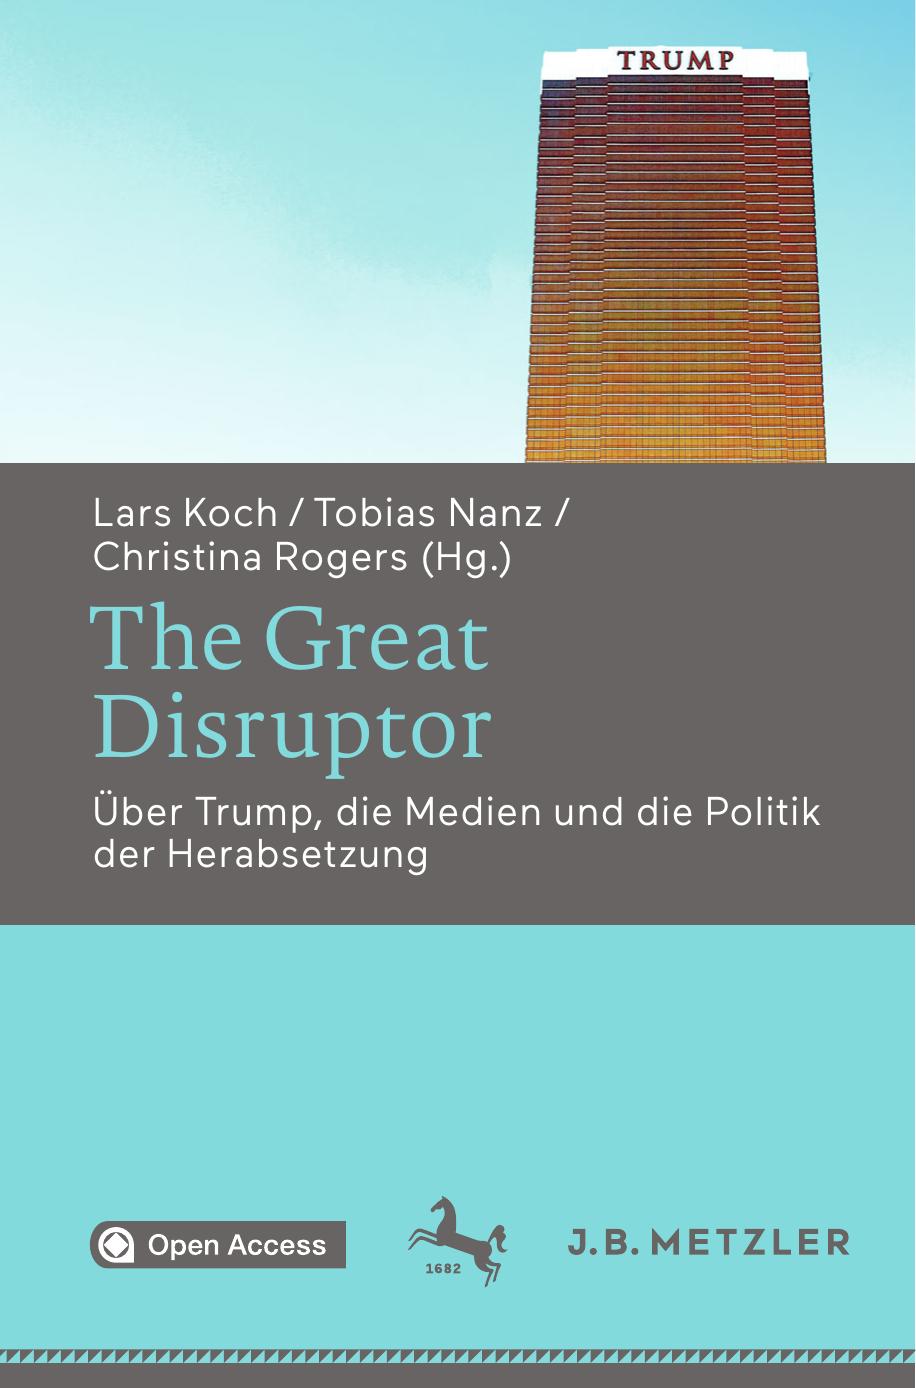 The Great Disruptor: Über Trump, die Medien und die Politik der Herabsetzung